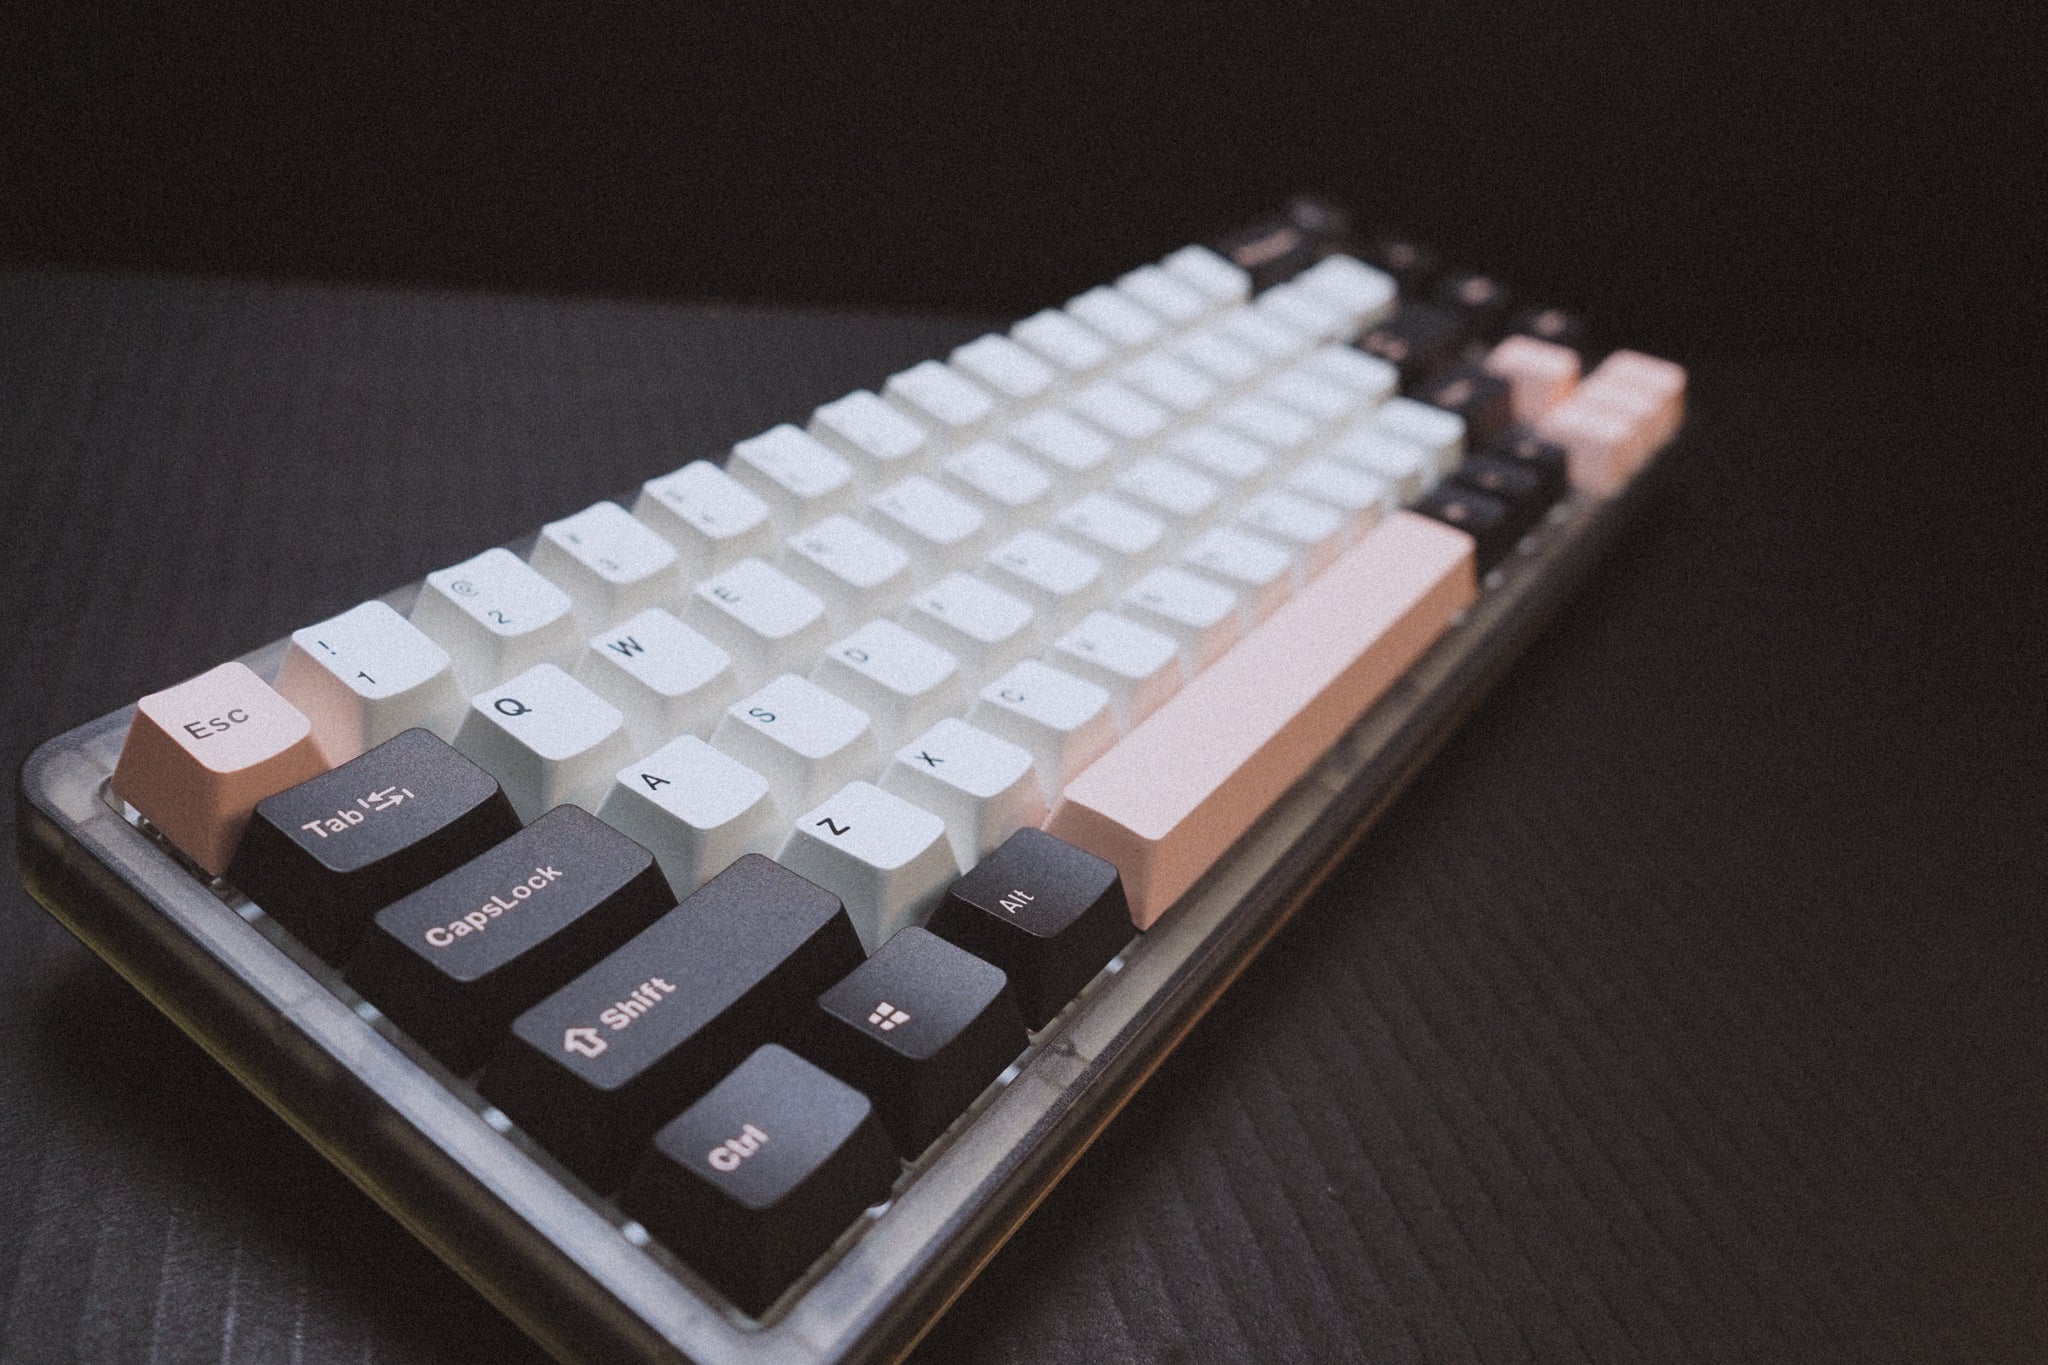 T69 Pro Keyboard